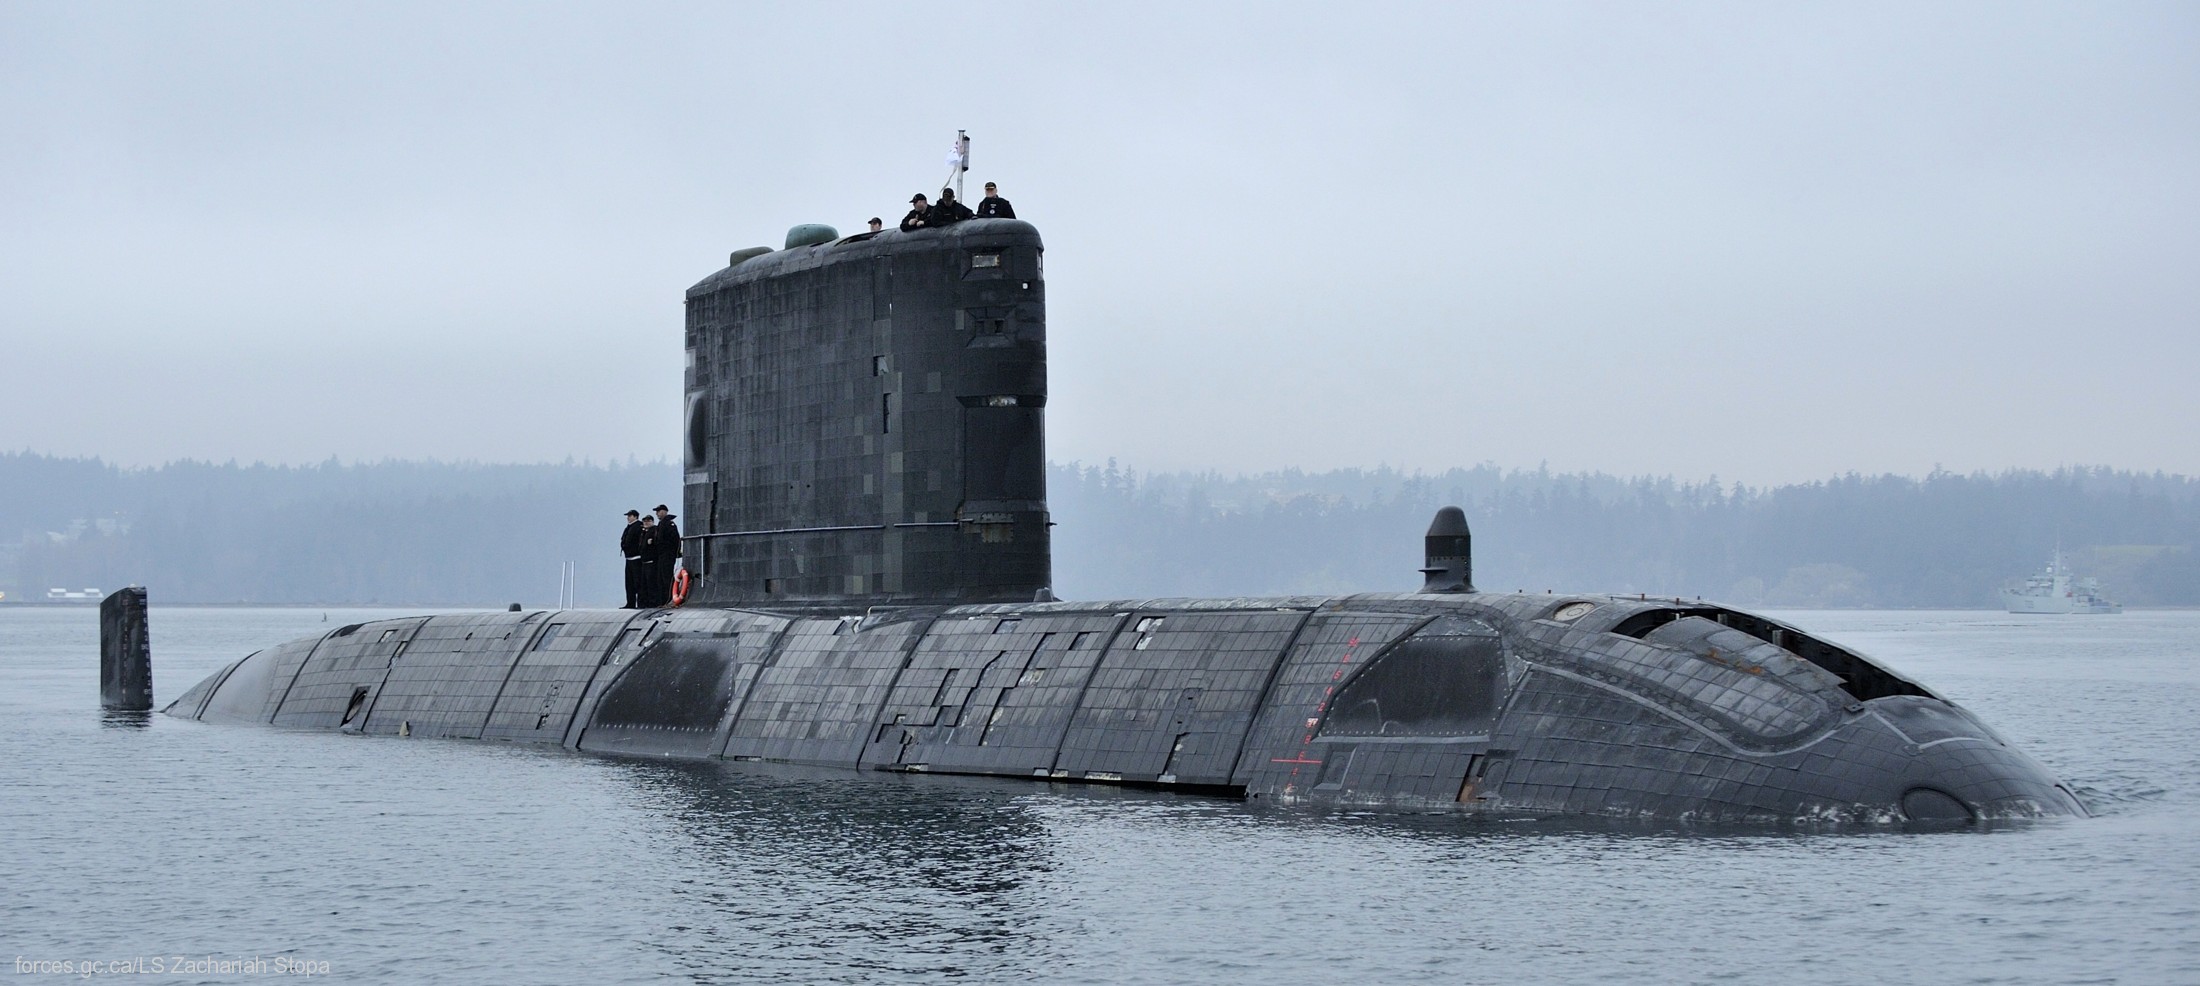 upholder class attack submarine ssk hunter killer royal navy vivkers cammell laird 03x